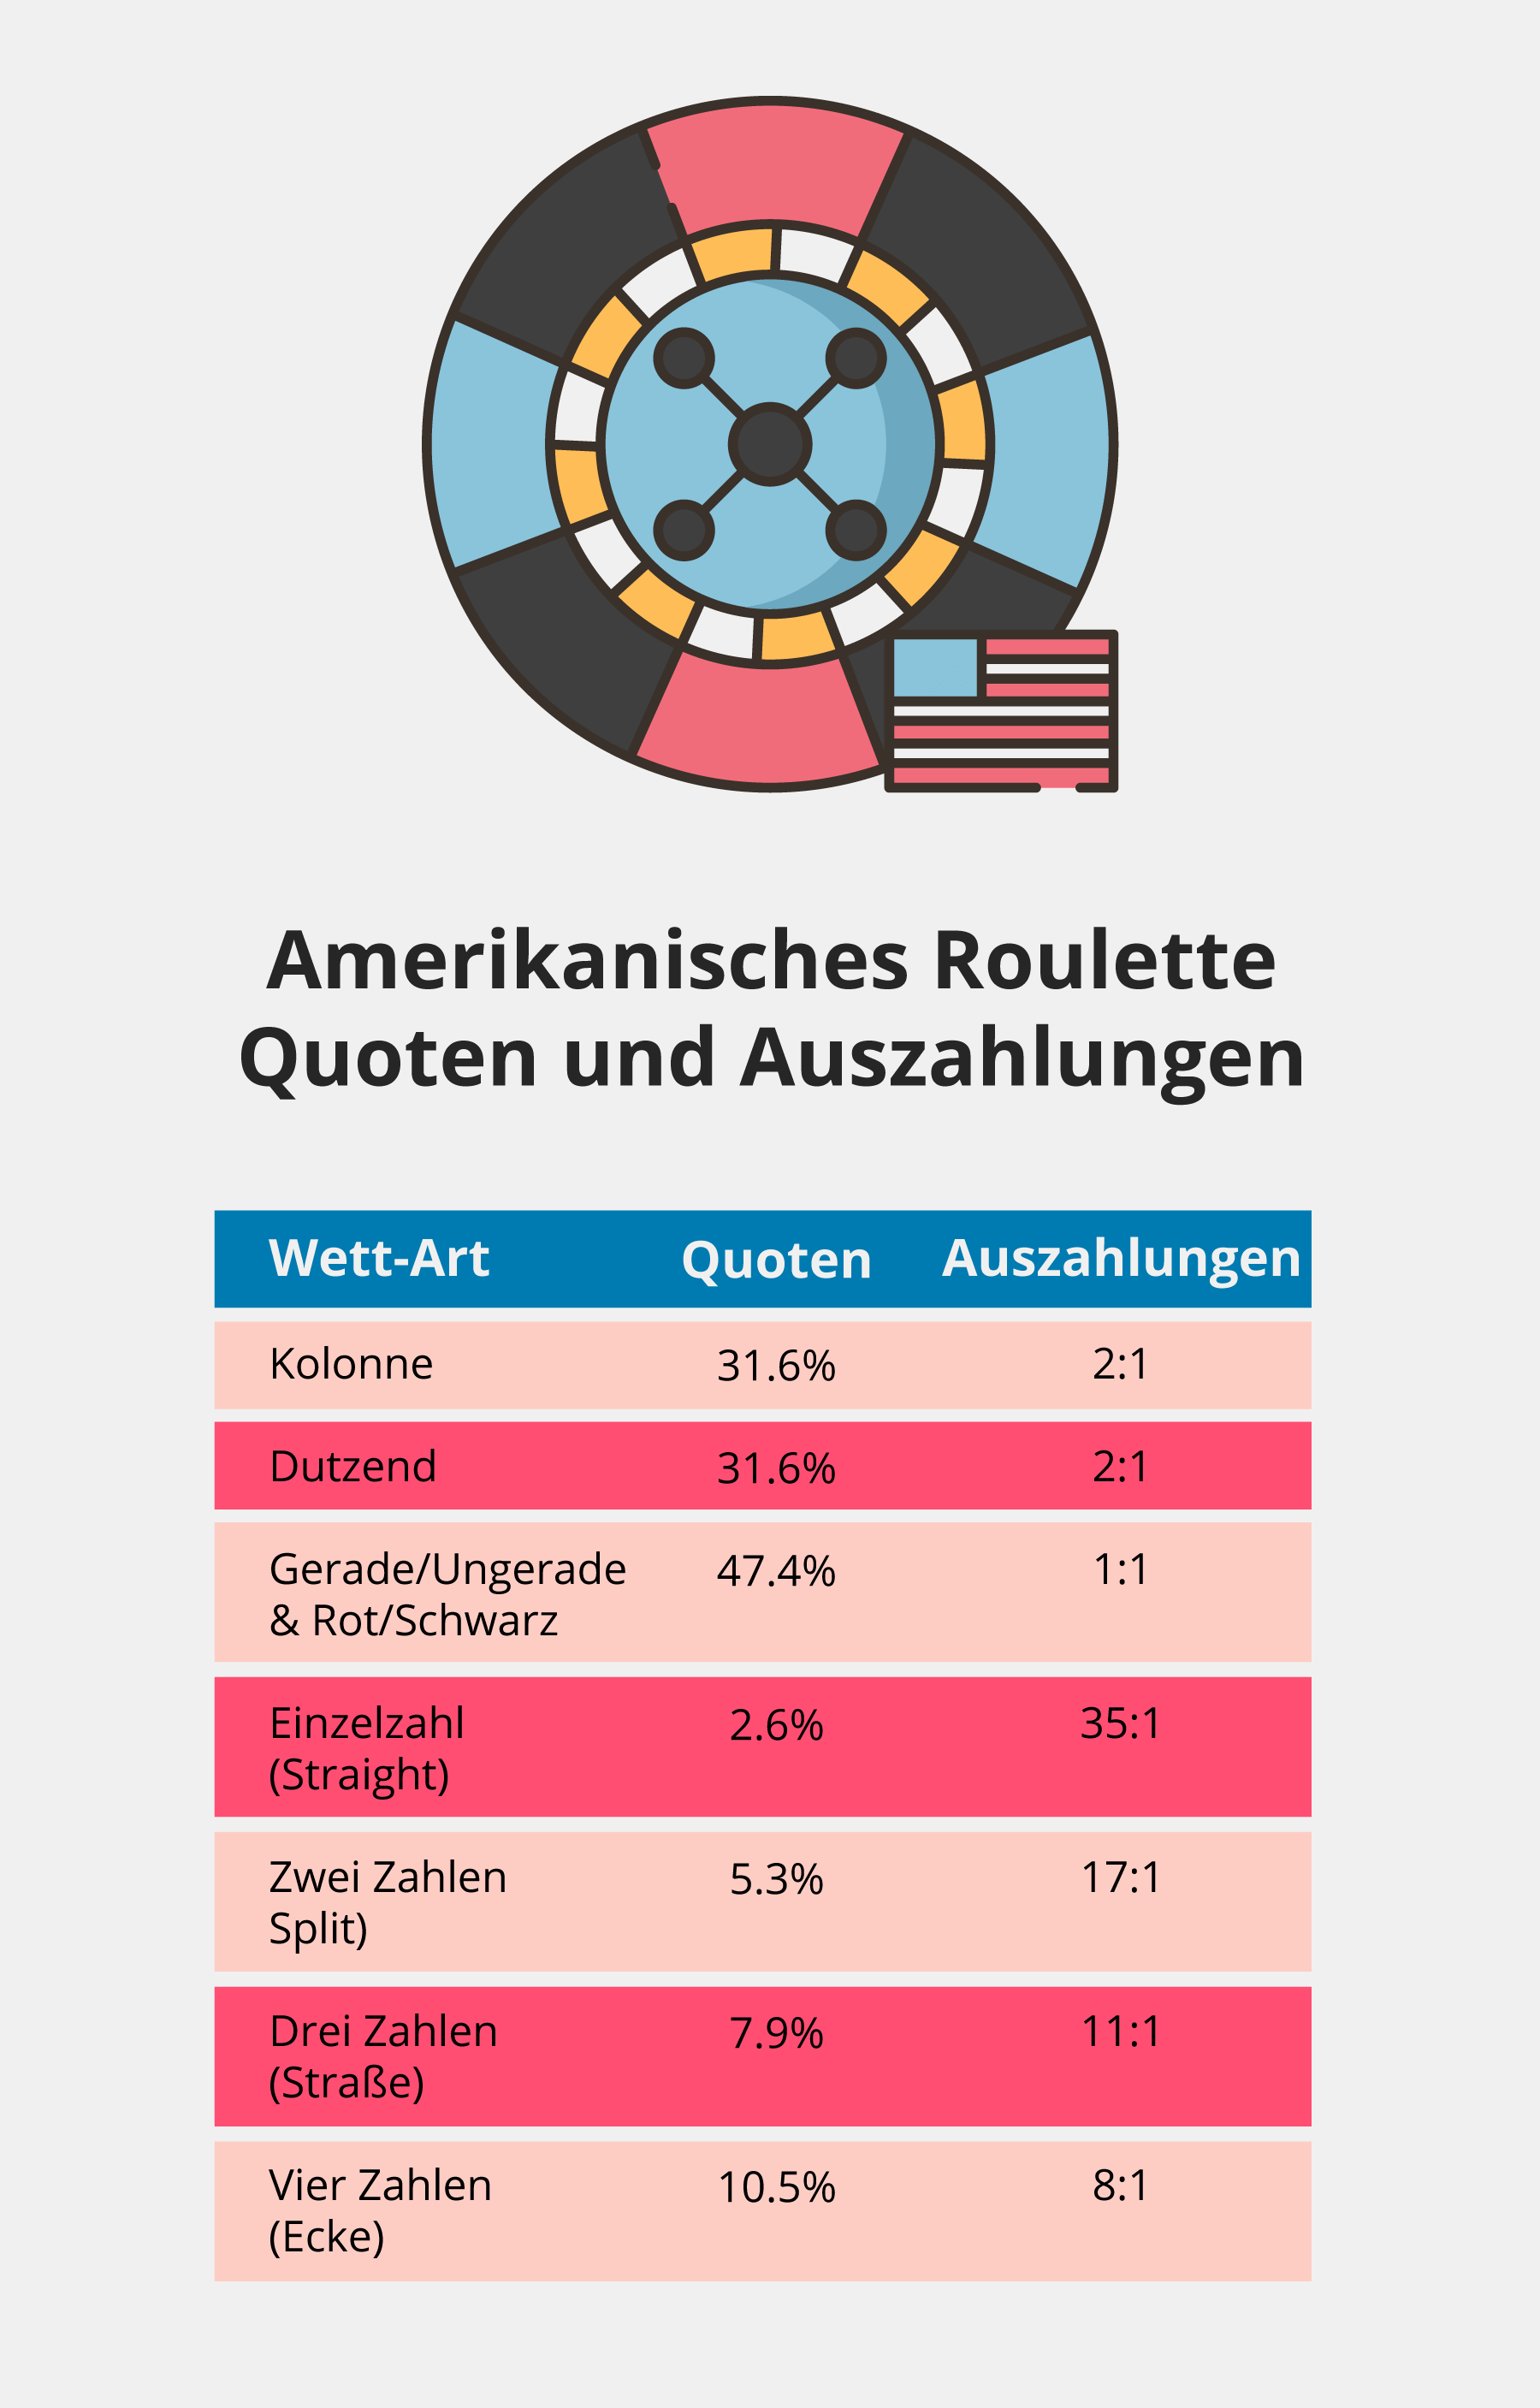 Amerikanisches Roulette: Quoten und Auszahlungen